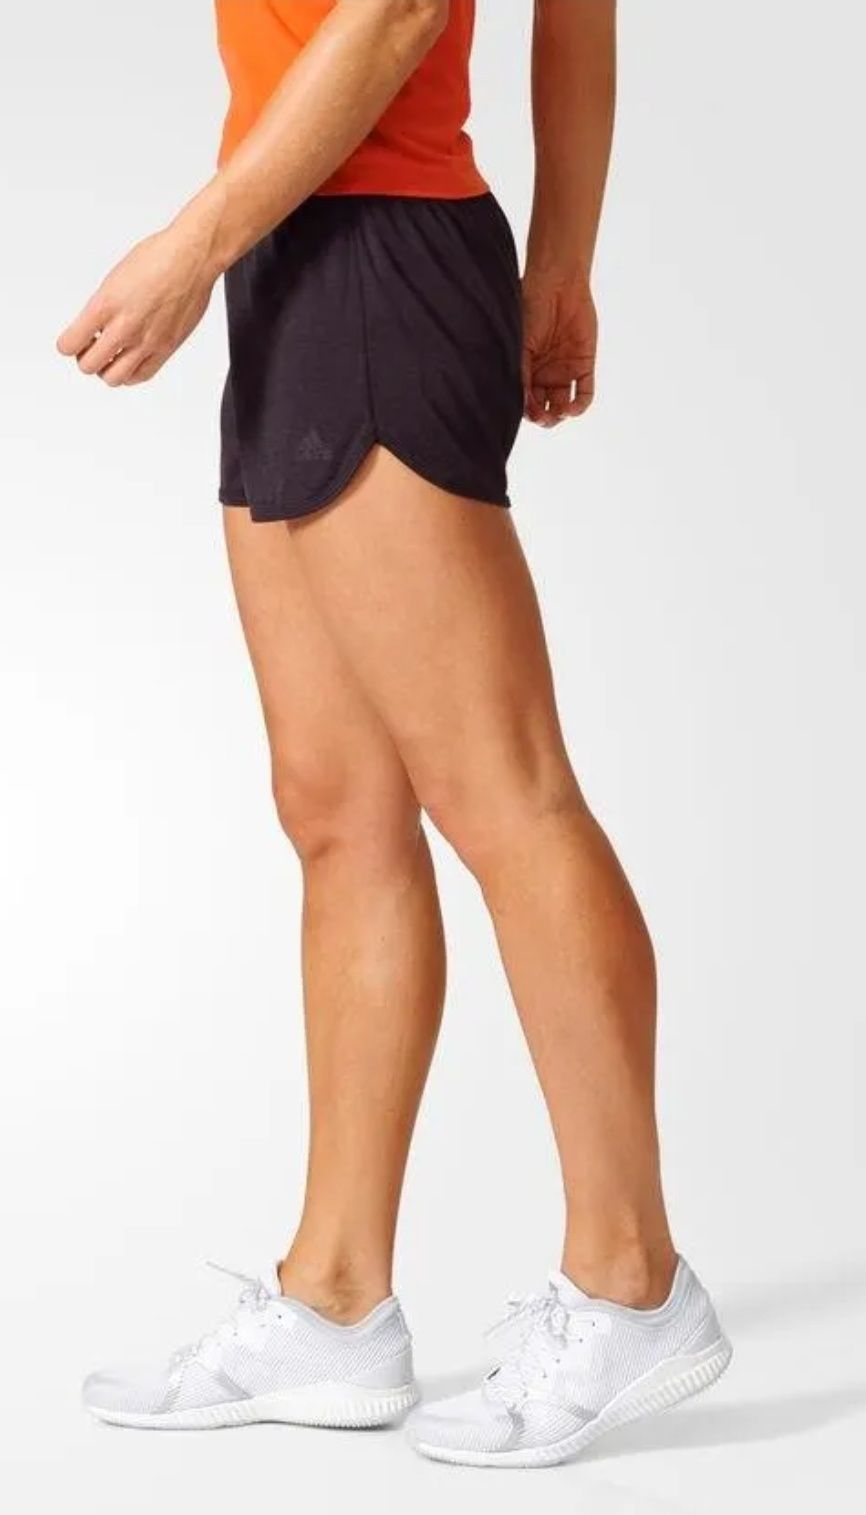 Spodenki damskie Adidas CORECHILL shorts Climachill Bq0411L r.L